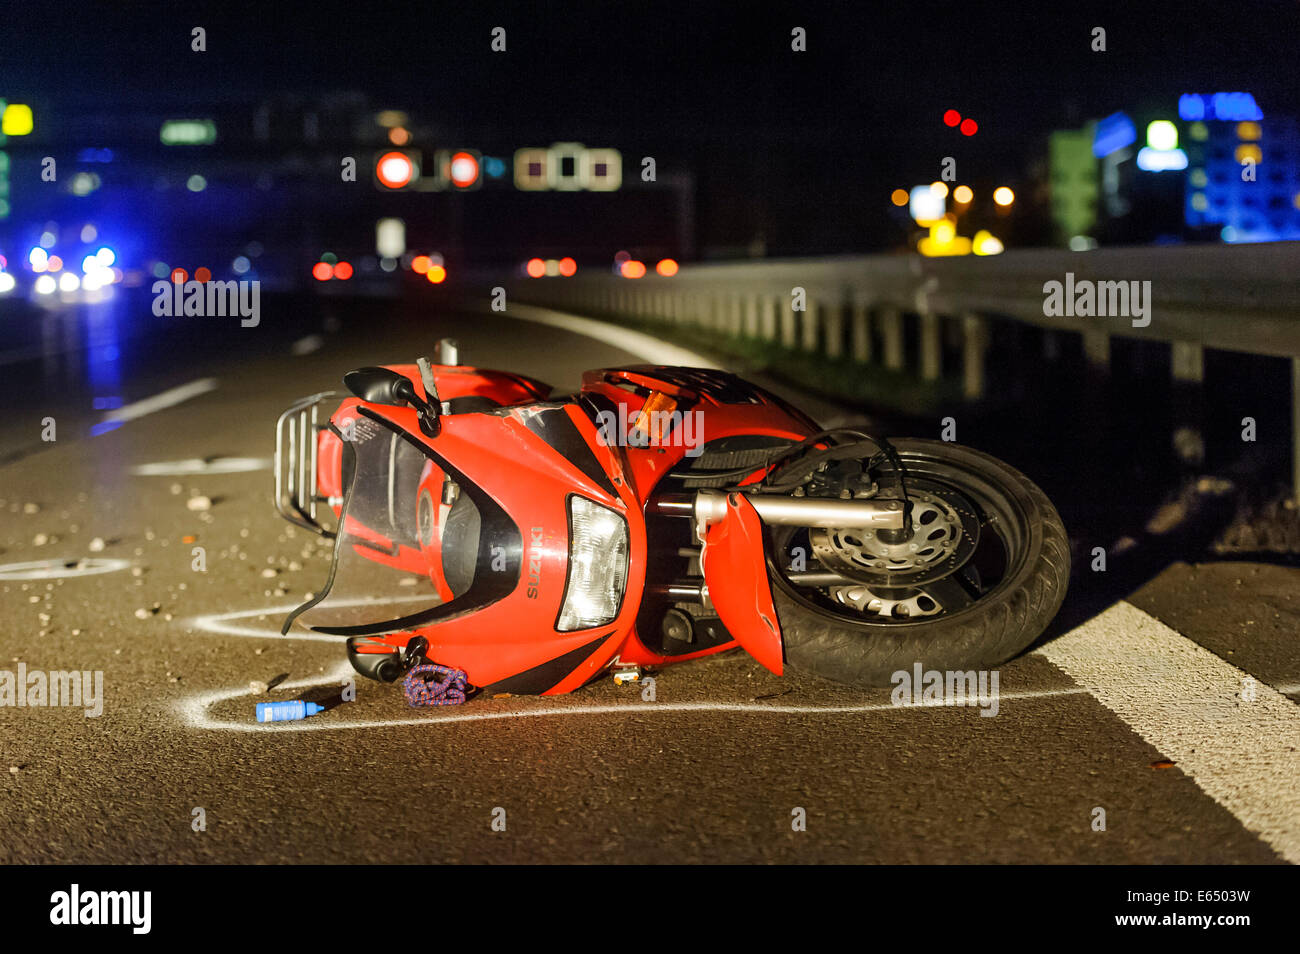 Tödlicher Motorrad-Unfall auf der B27-Straße in der Nähe von Leinfelden- Echterdingen, ein Suzuki-Motorrad auf der Straße liegen Stockfotografie -  Alamy